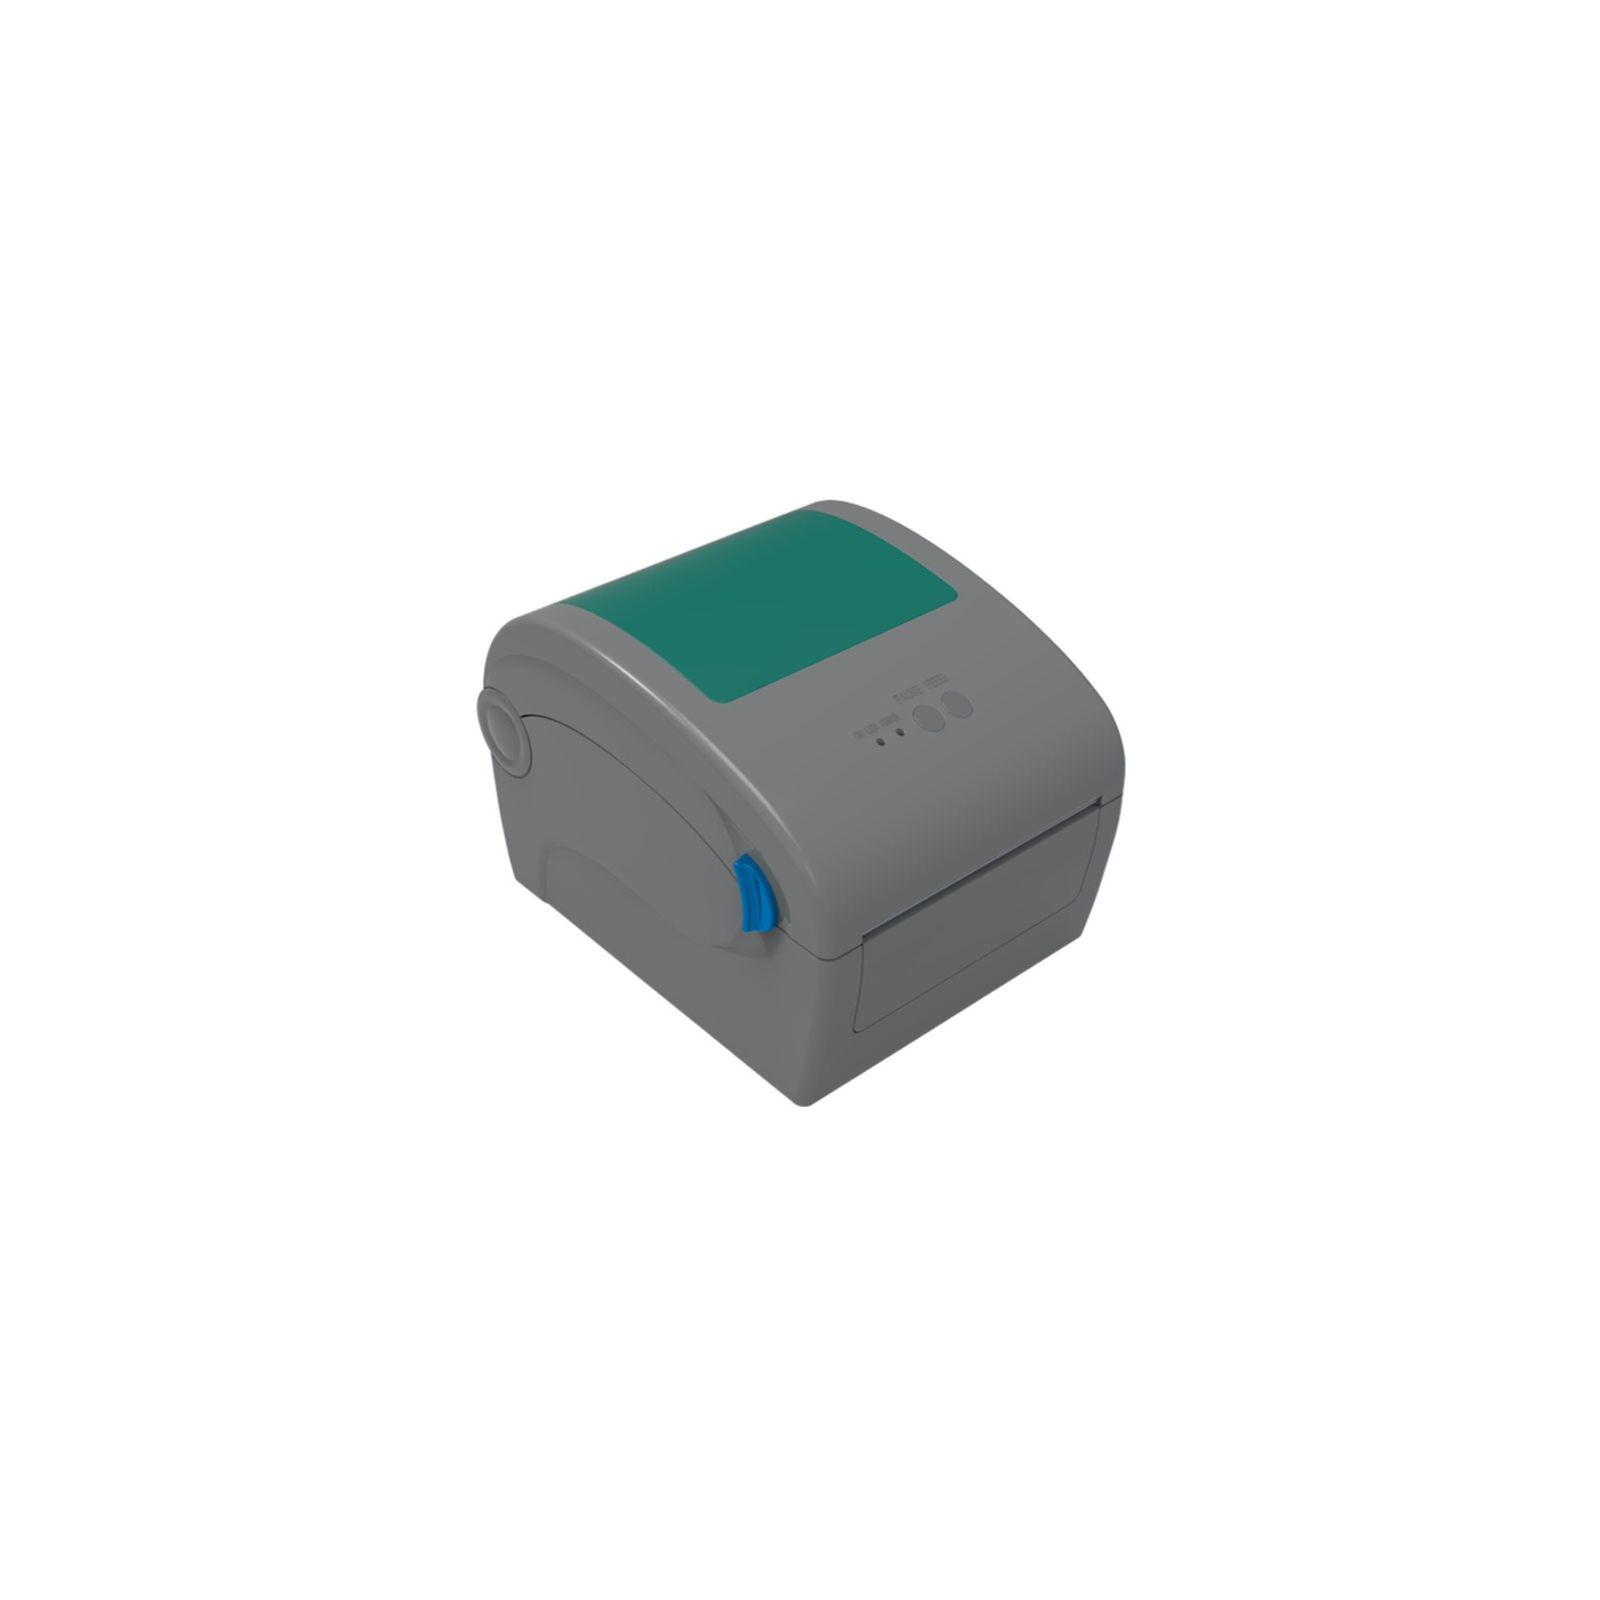 Принтер этикеток Gprinter GP-1924D USB (GP1924D-0049)